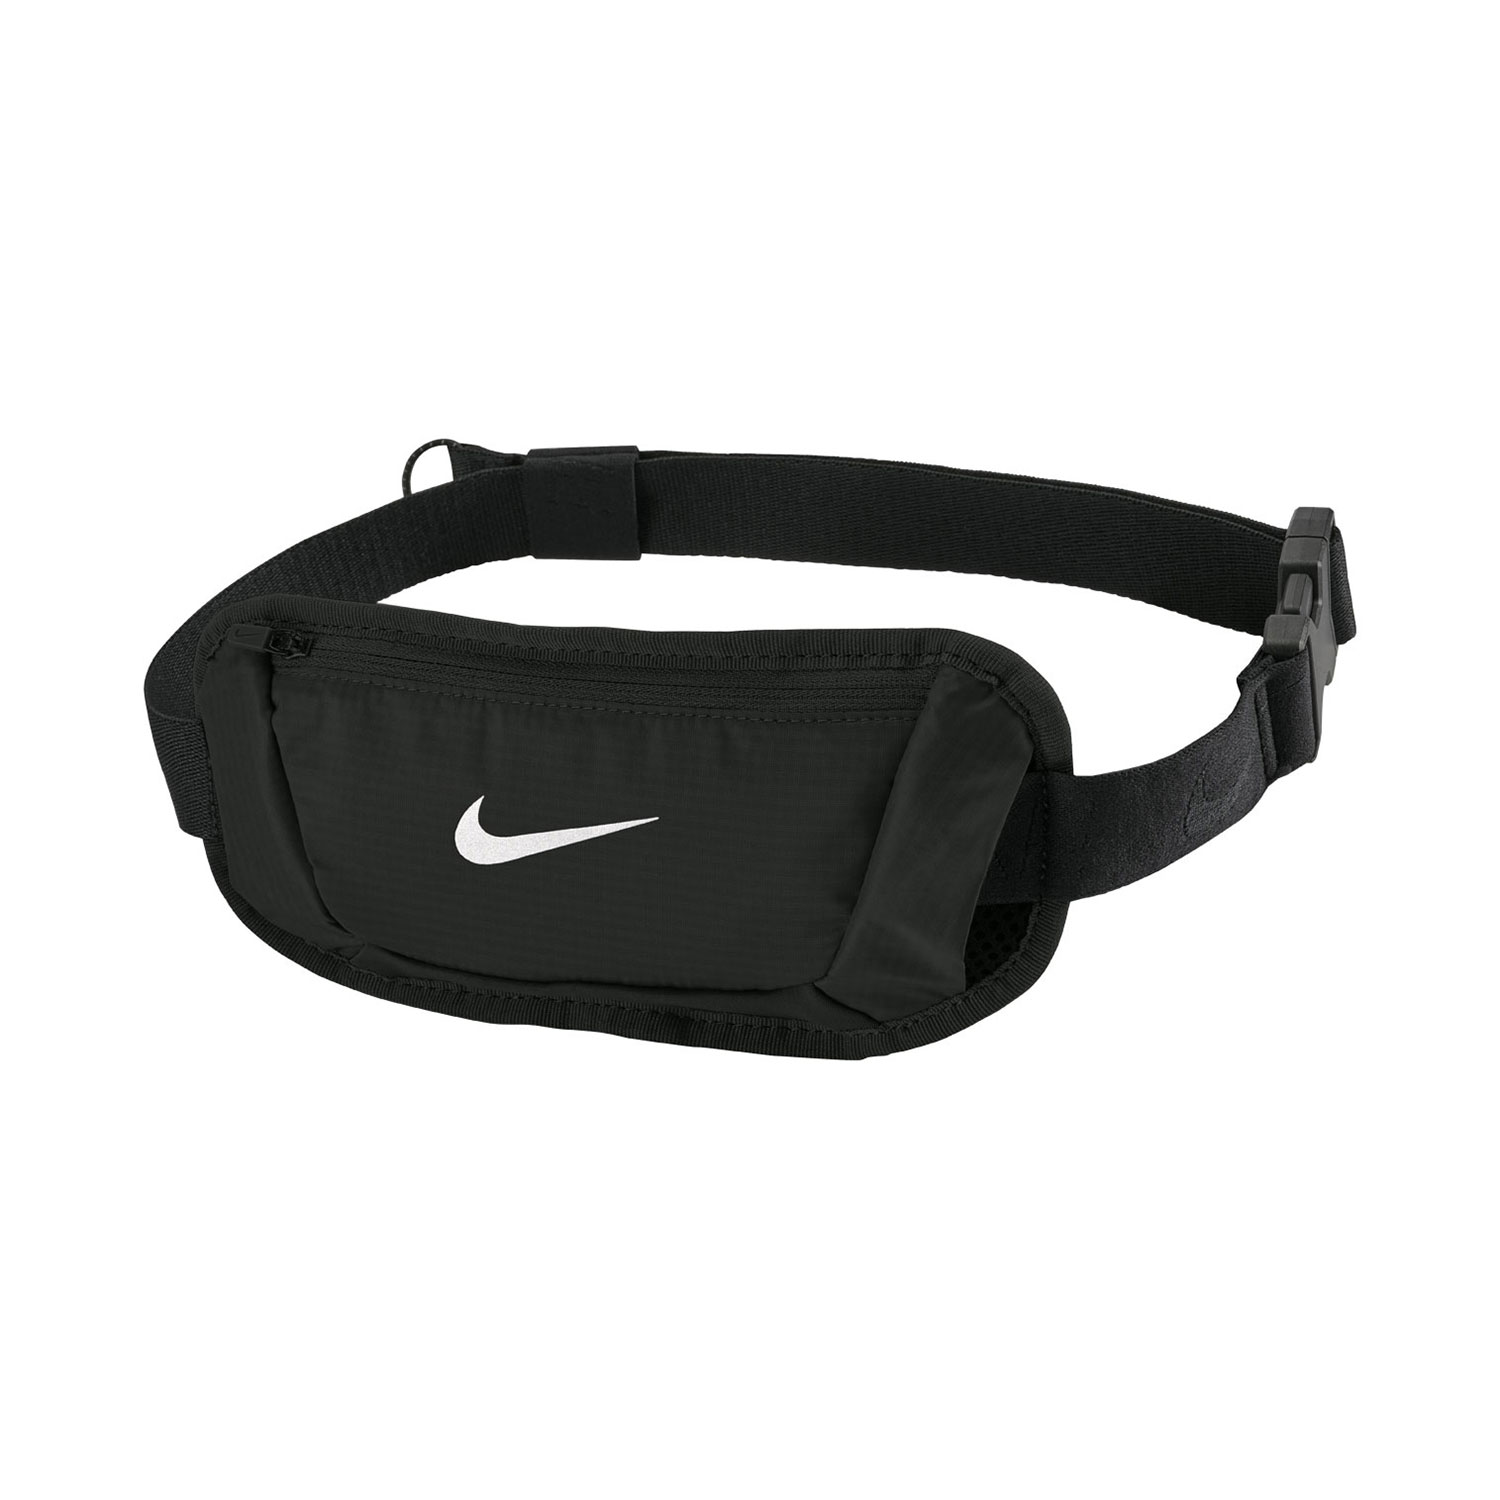 Nike Challenger 2.0 Small Waistpack - Black/White